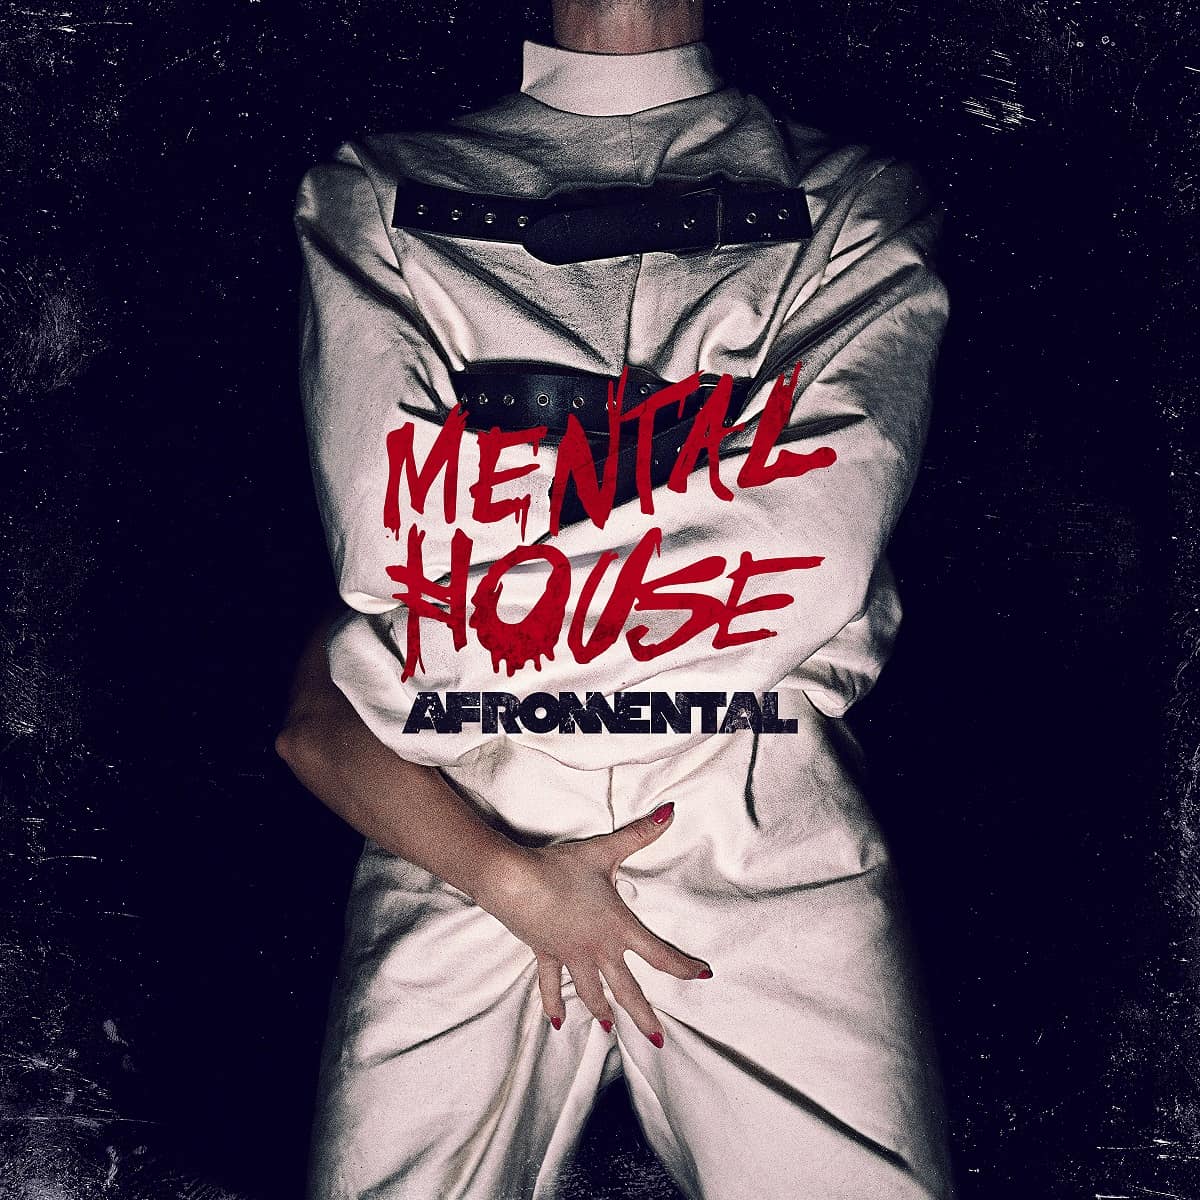 Mental House najnowszy album zespołu Afromental!